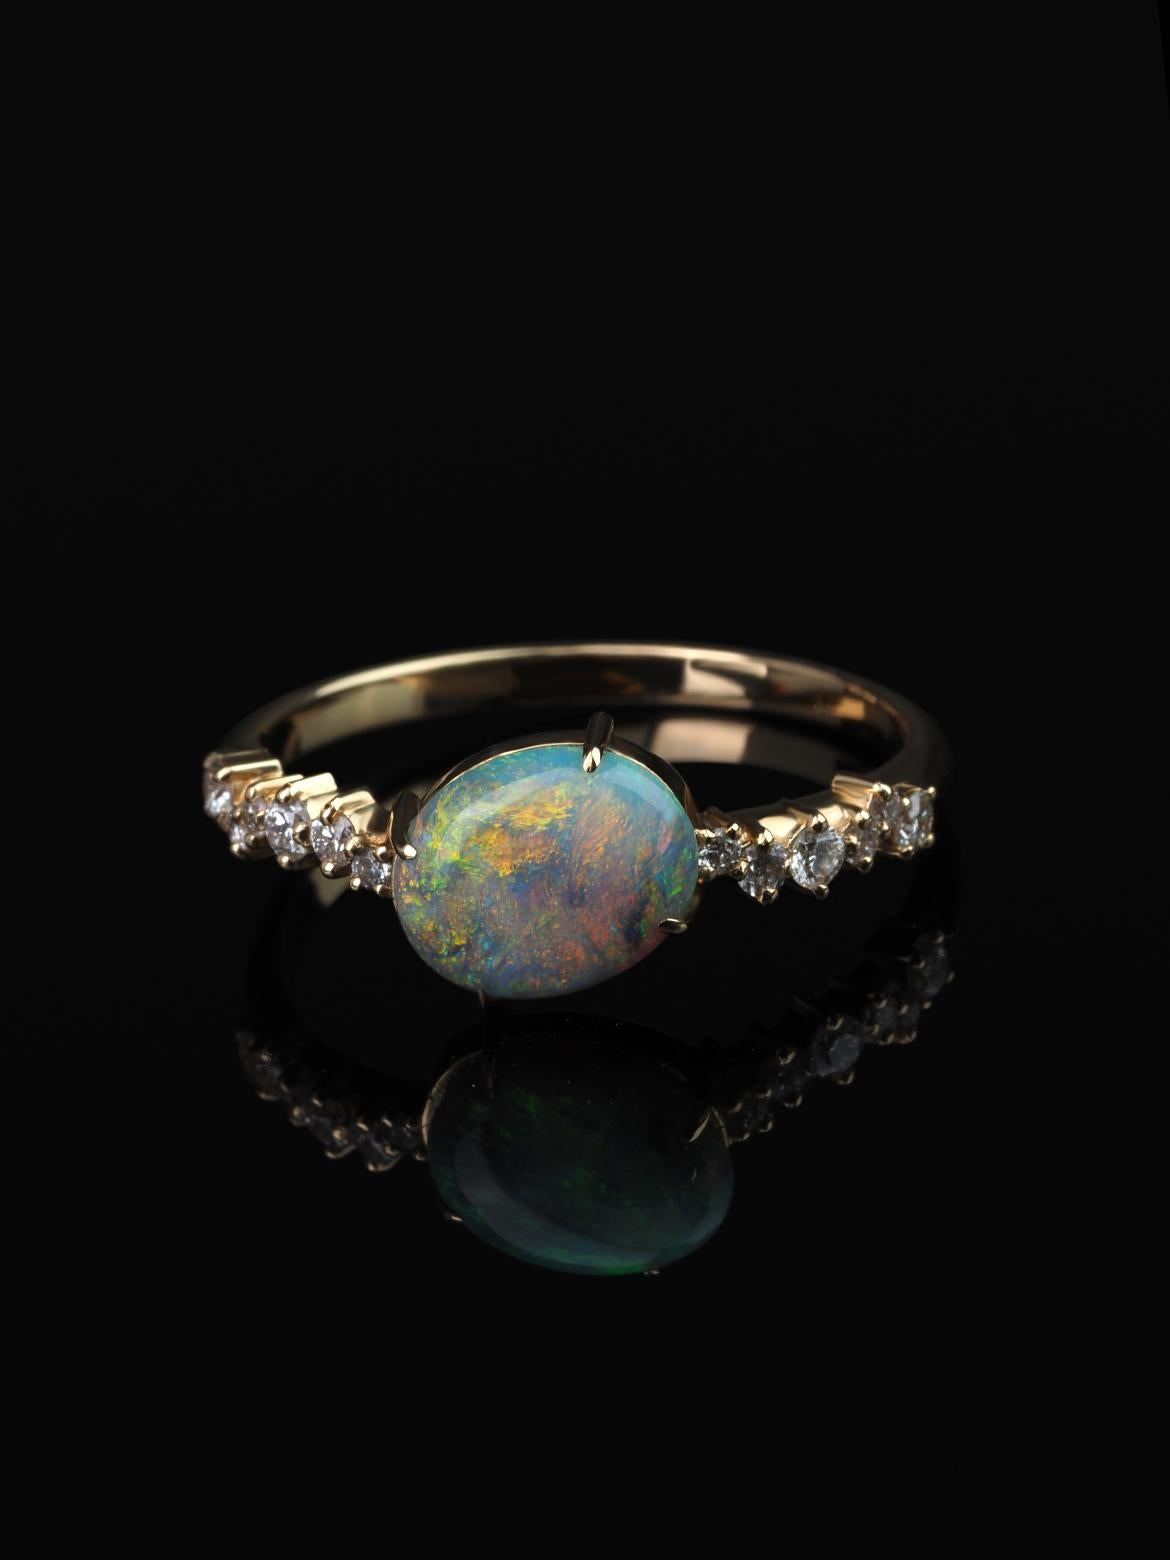 Bague en or 14K avec diamants en opale australienne
Origine de l'opale - Australie 
Dimensions de l'opale - 0.12 х 0.24 х 0.31 in / 3 х 6 х 8 mm
poids de la pierre - 0.85 carats
poids de la bague - 1.91 grammes
Taille de la bague - 6.5